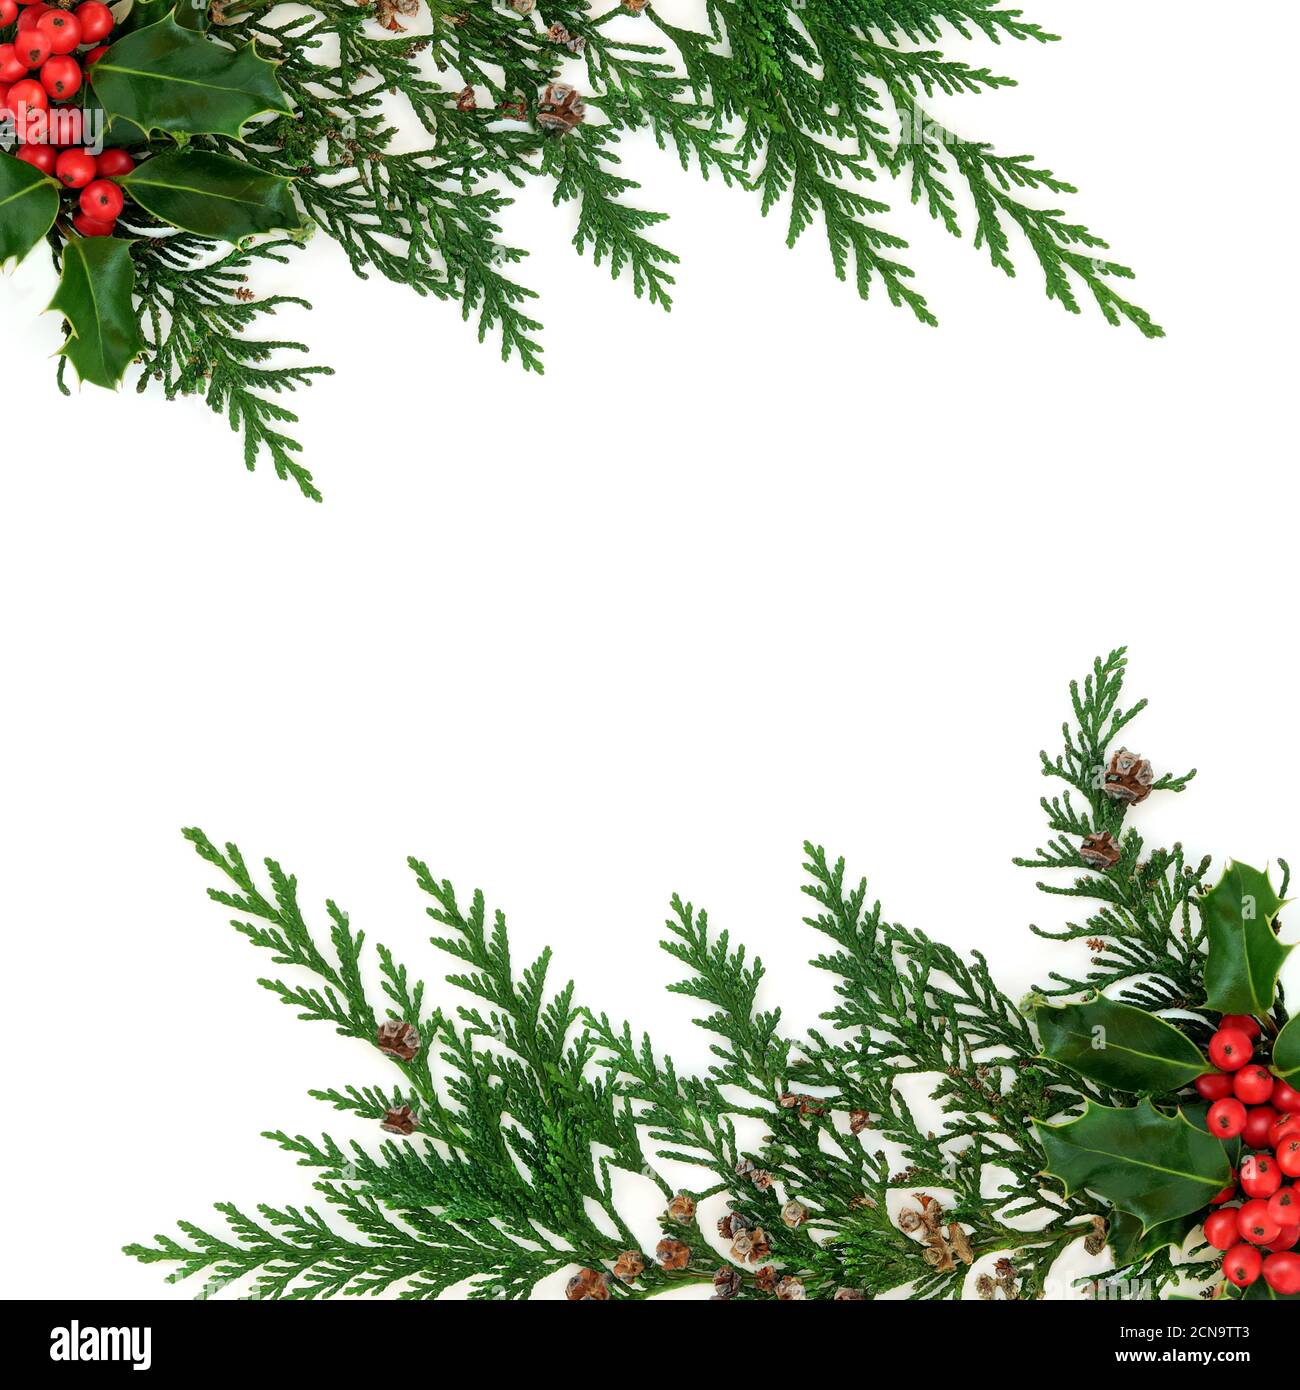 Décoration d'hiver naturelle sur fond blanc avec bordure de cyprès de cèdre et de baie de houx. Motif décoratif pour Noël et le nouvel an. Vue de dessus. Banque D'Images